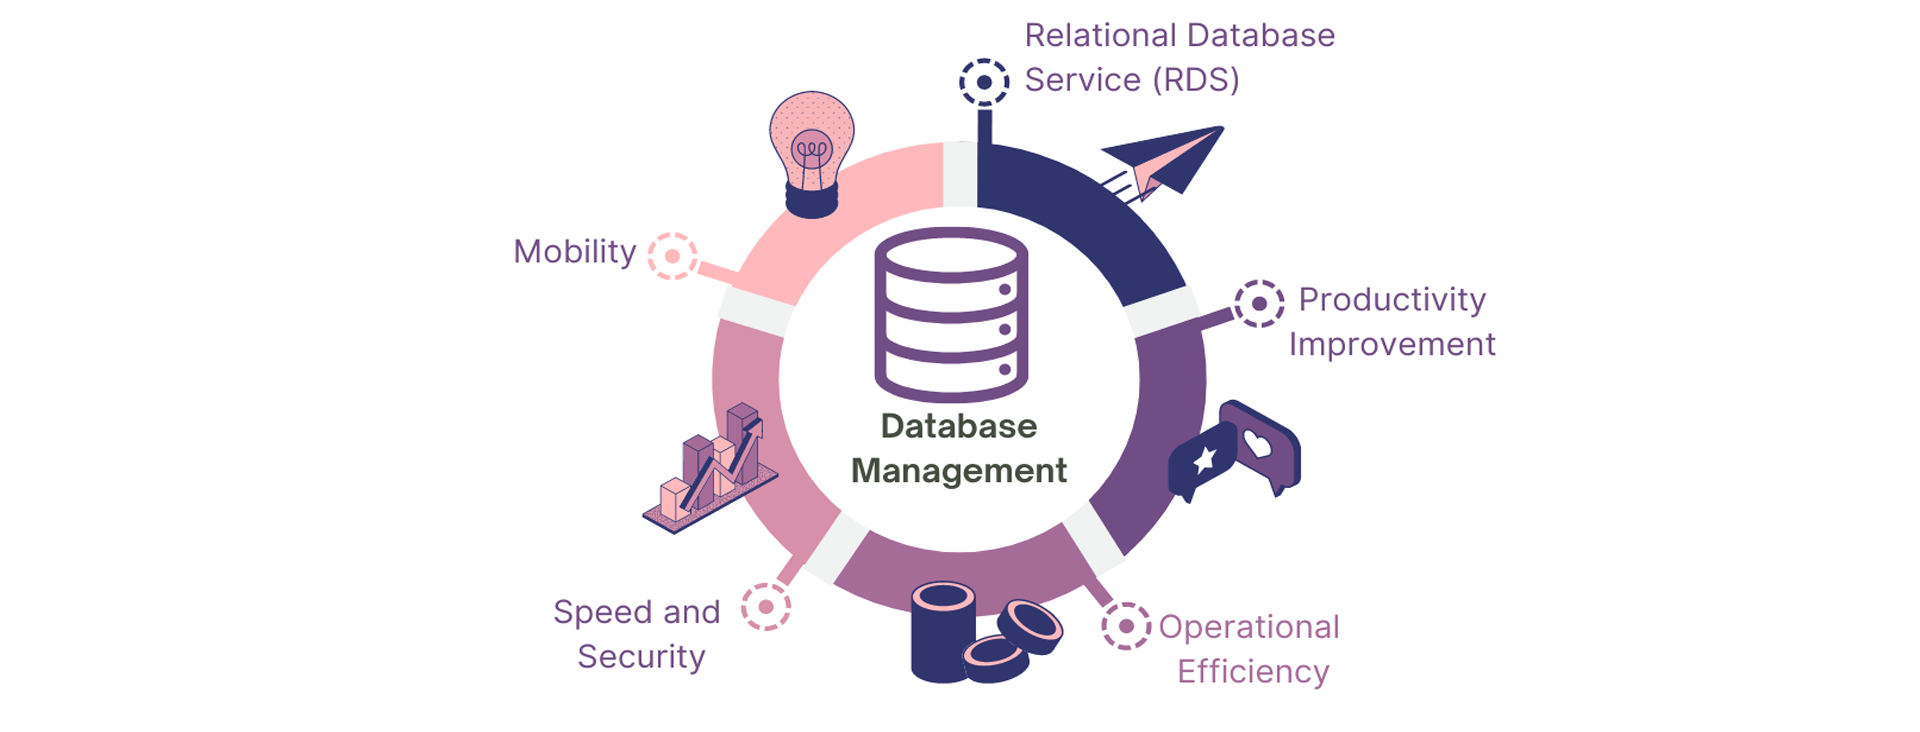 Database Management,Database management services,Database administration solutions,Database management outsourcing,Database consulting services,Database performance tuning,Database maintenance and support,